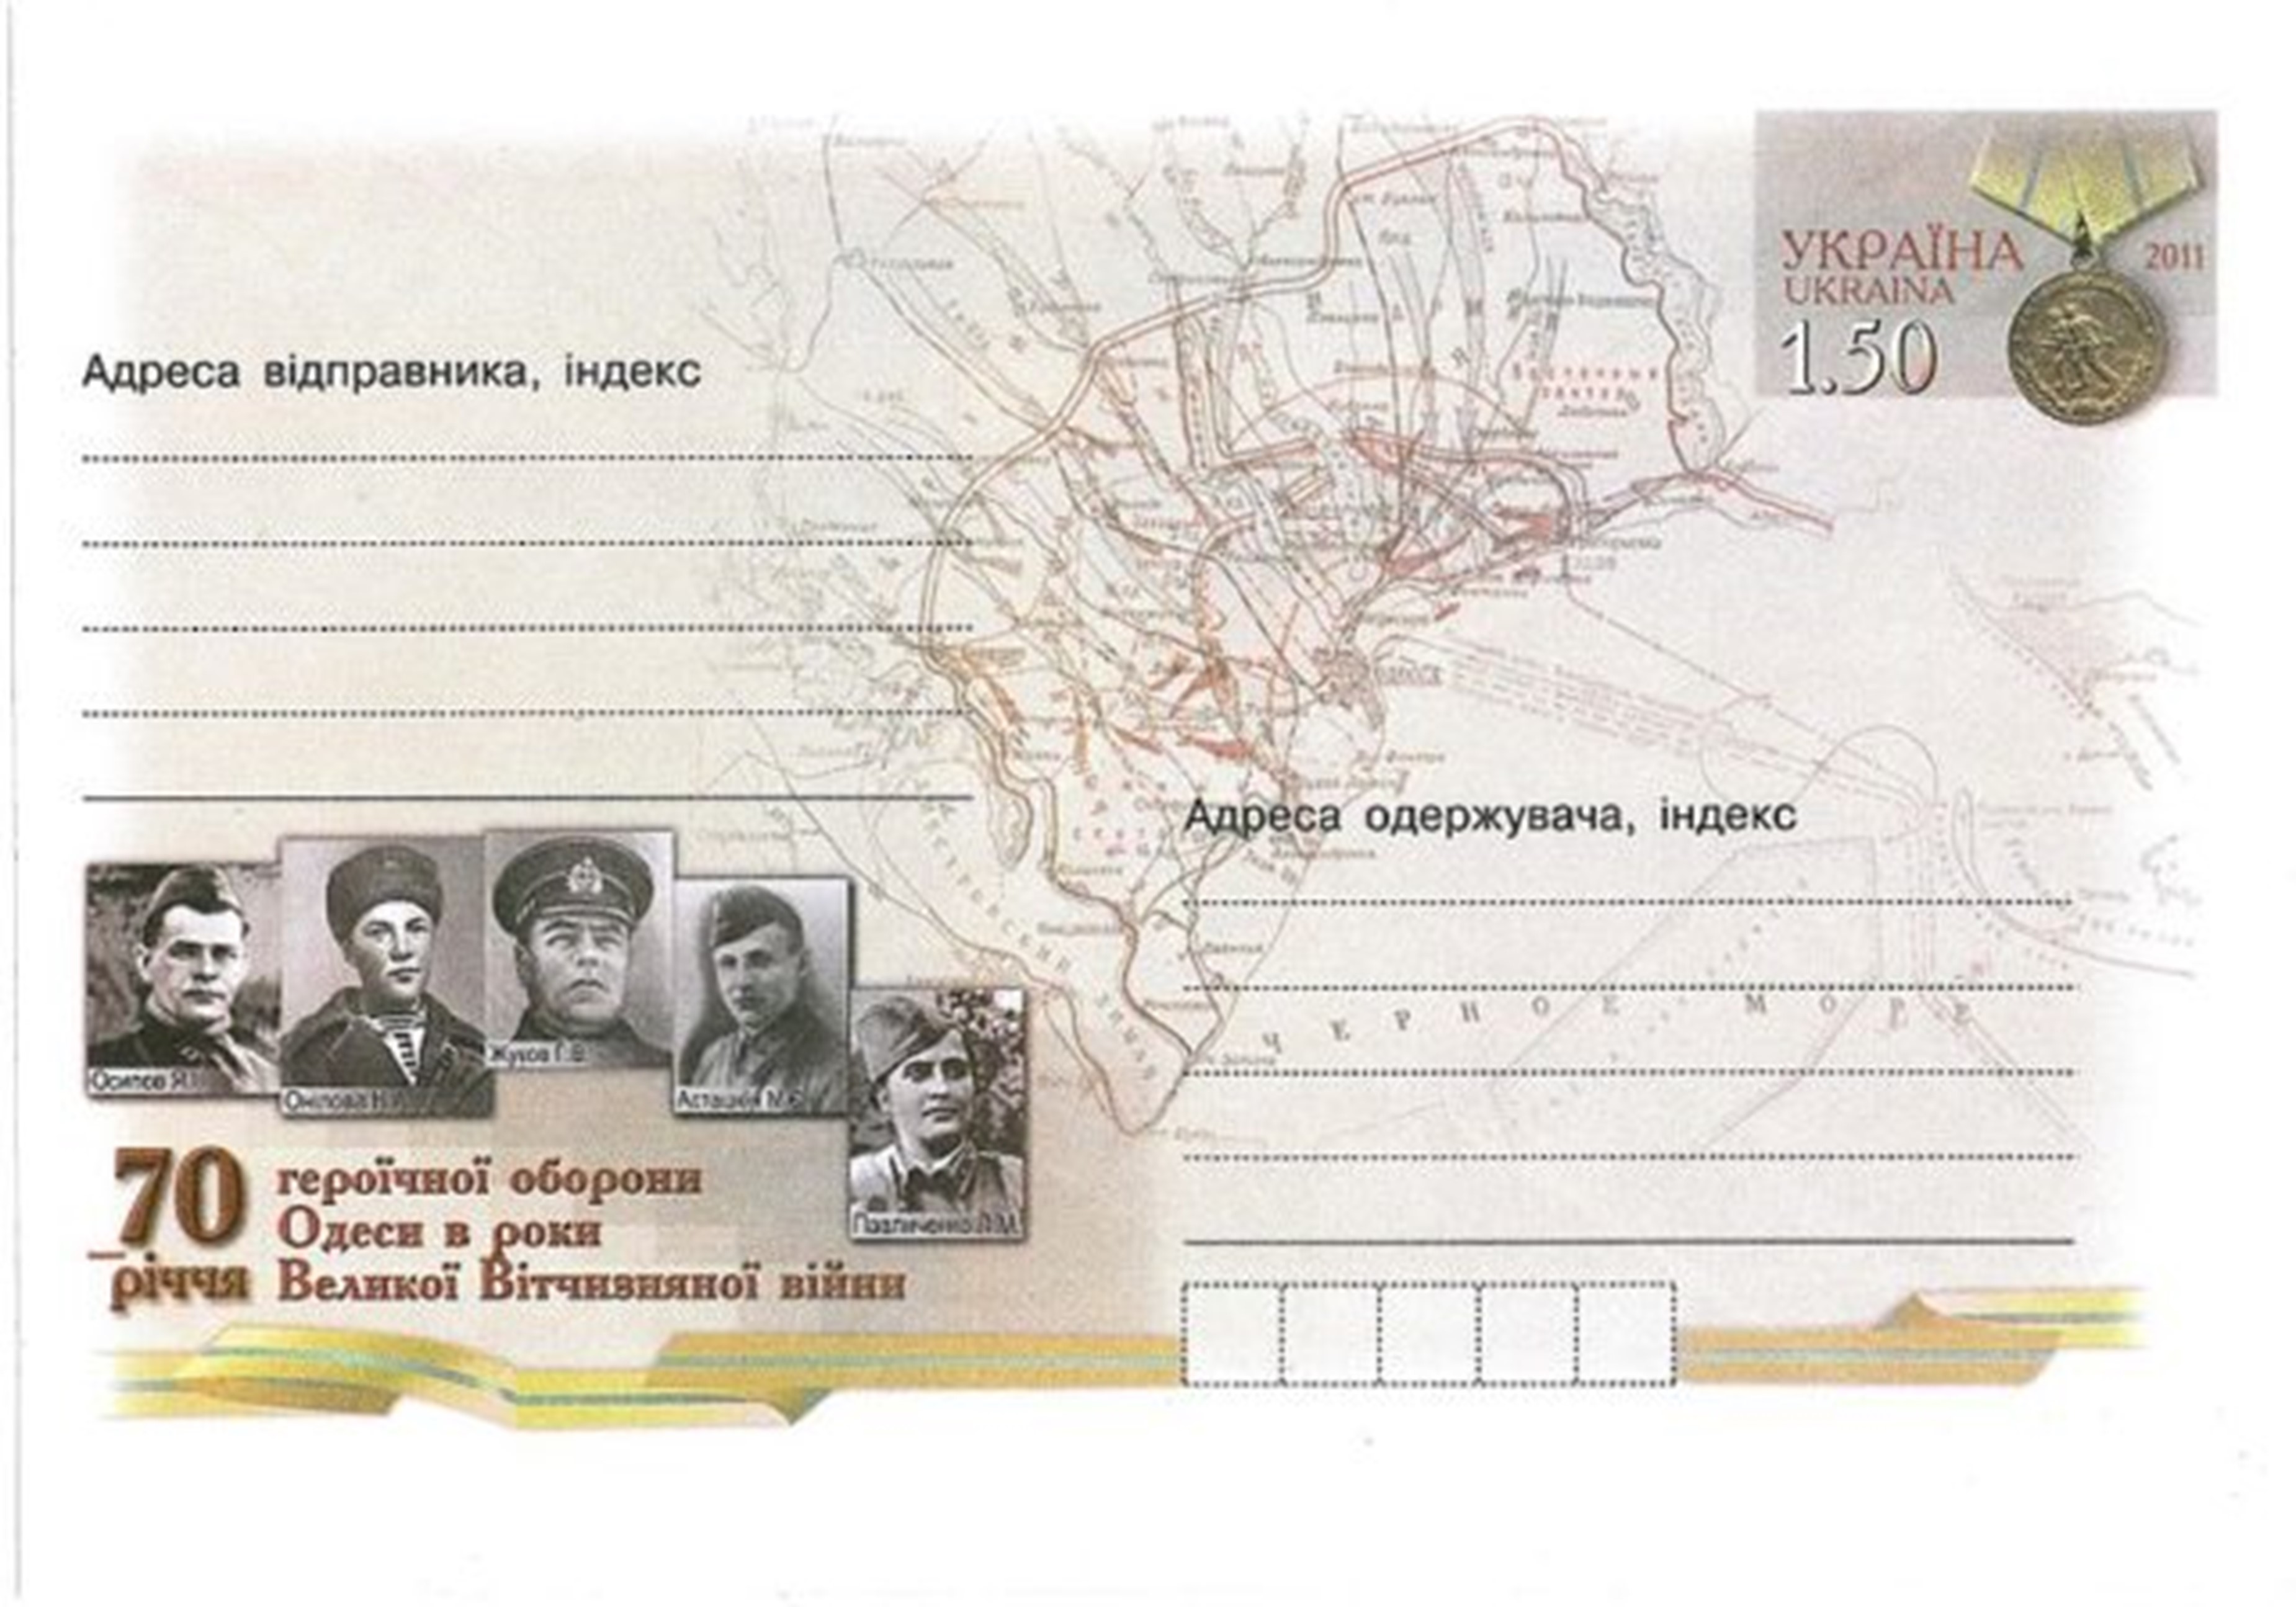 70 de ani de la apărarea Odessei (1941). Plic cu un timbru poștal original. Ukrposhta, 2011. Timbrul înfățișează o medalie sovietică "Pentru apărarea Odesei"